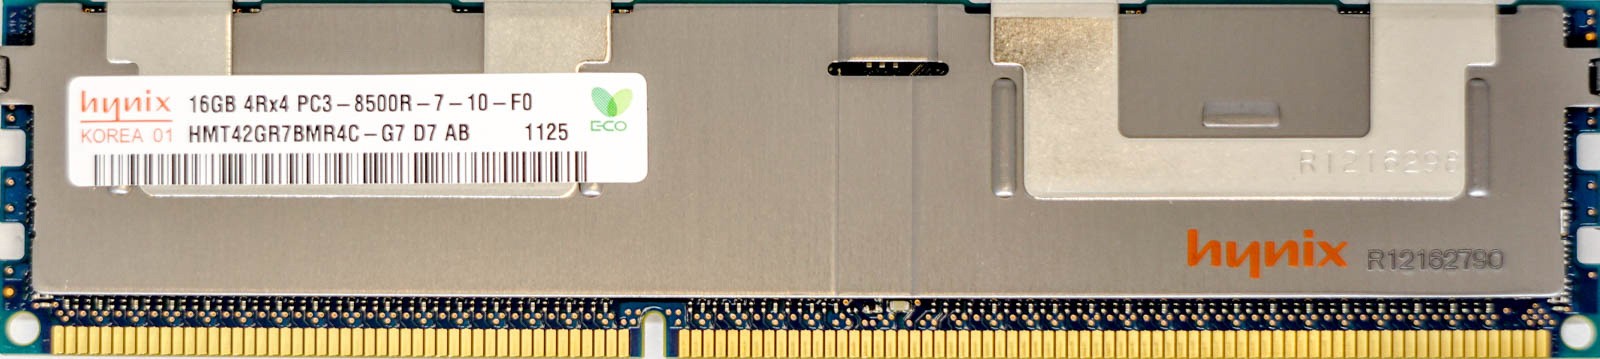 Hynix - 16GB PC3-8500R (DDR3-1066Mhz, 4RX4)